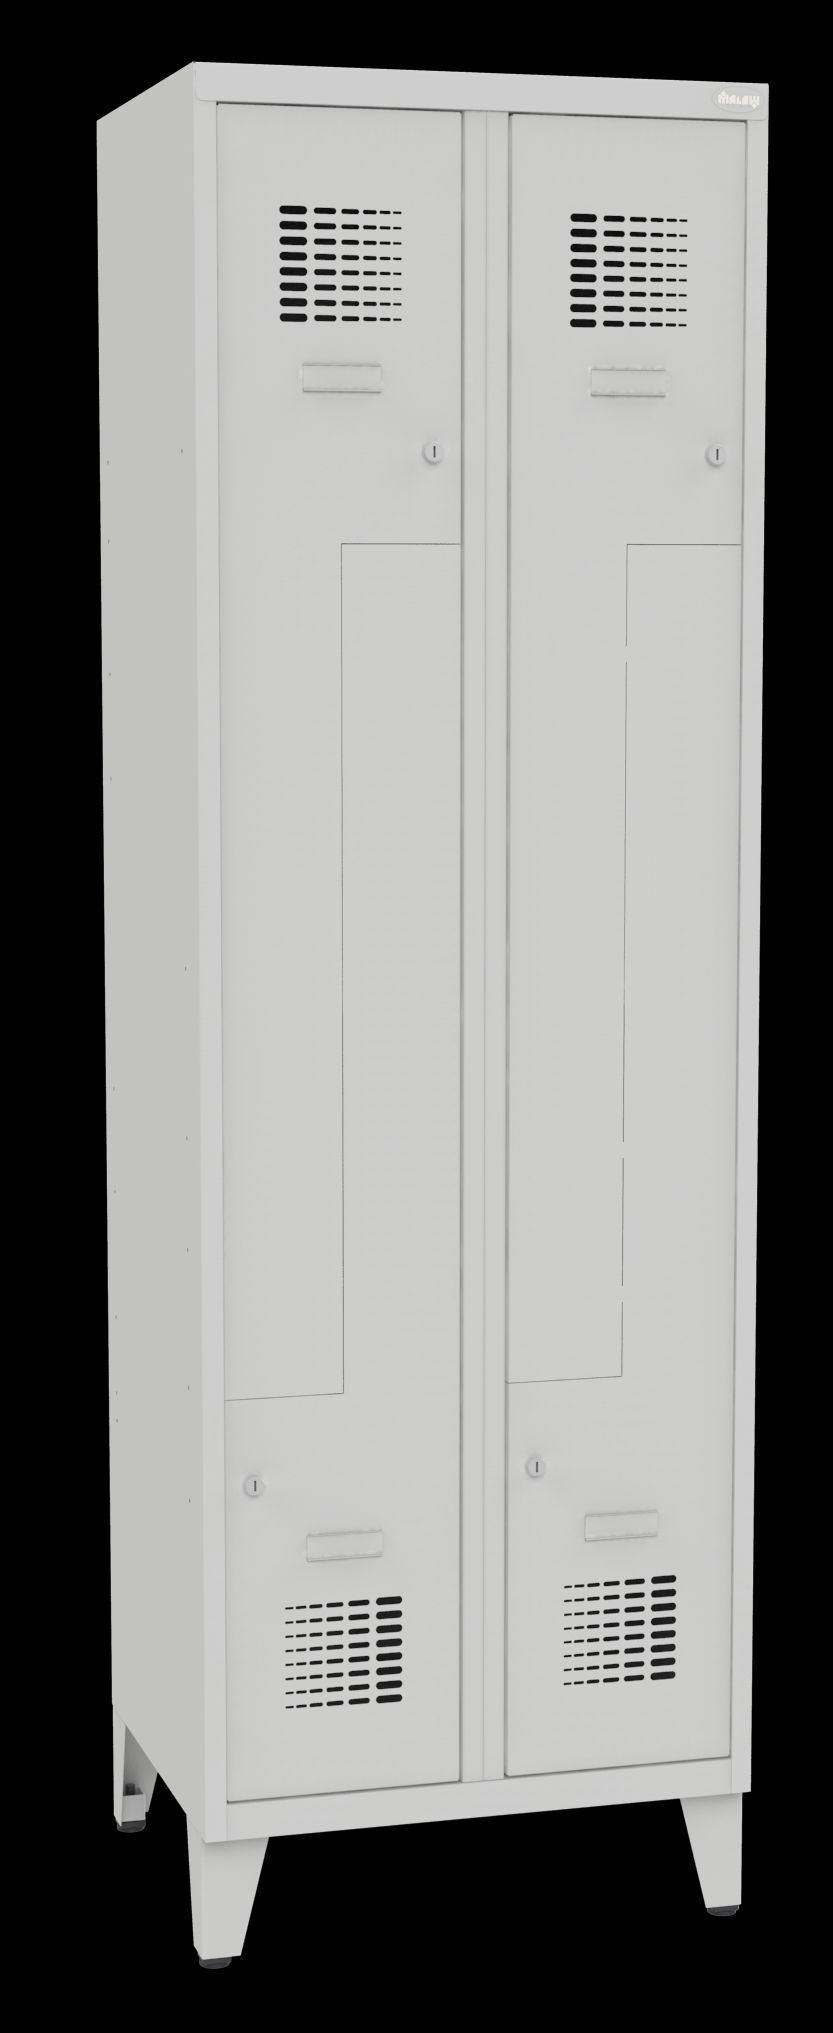 Öltözőszekrény Z/4-300 lábakon álló Z ajtós szekrény